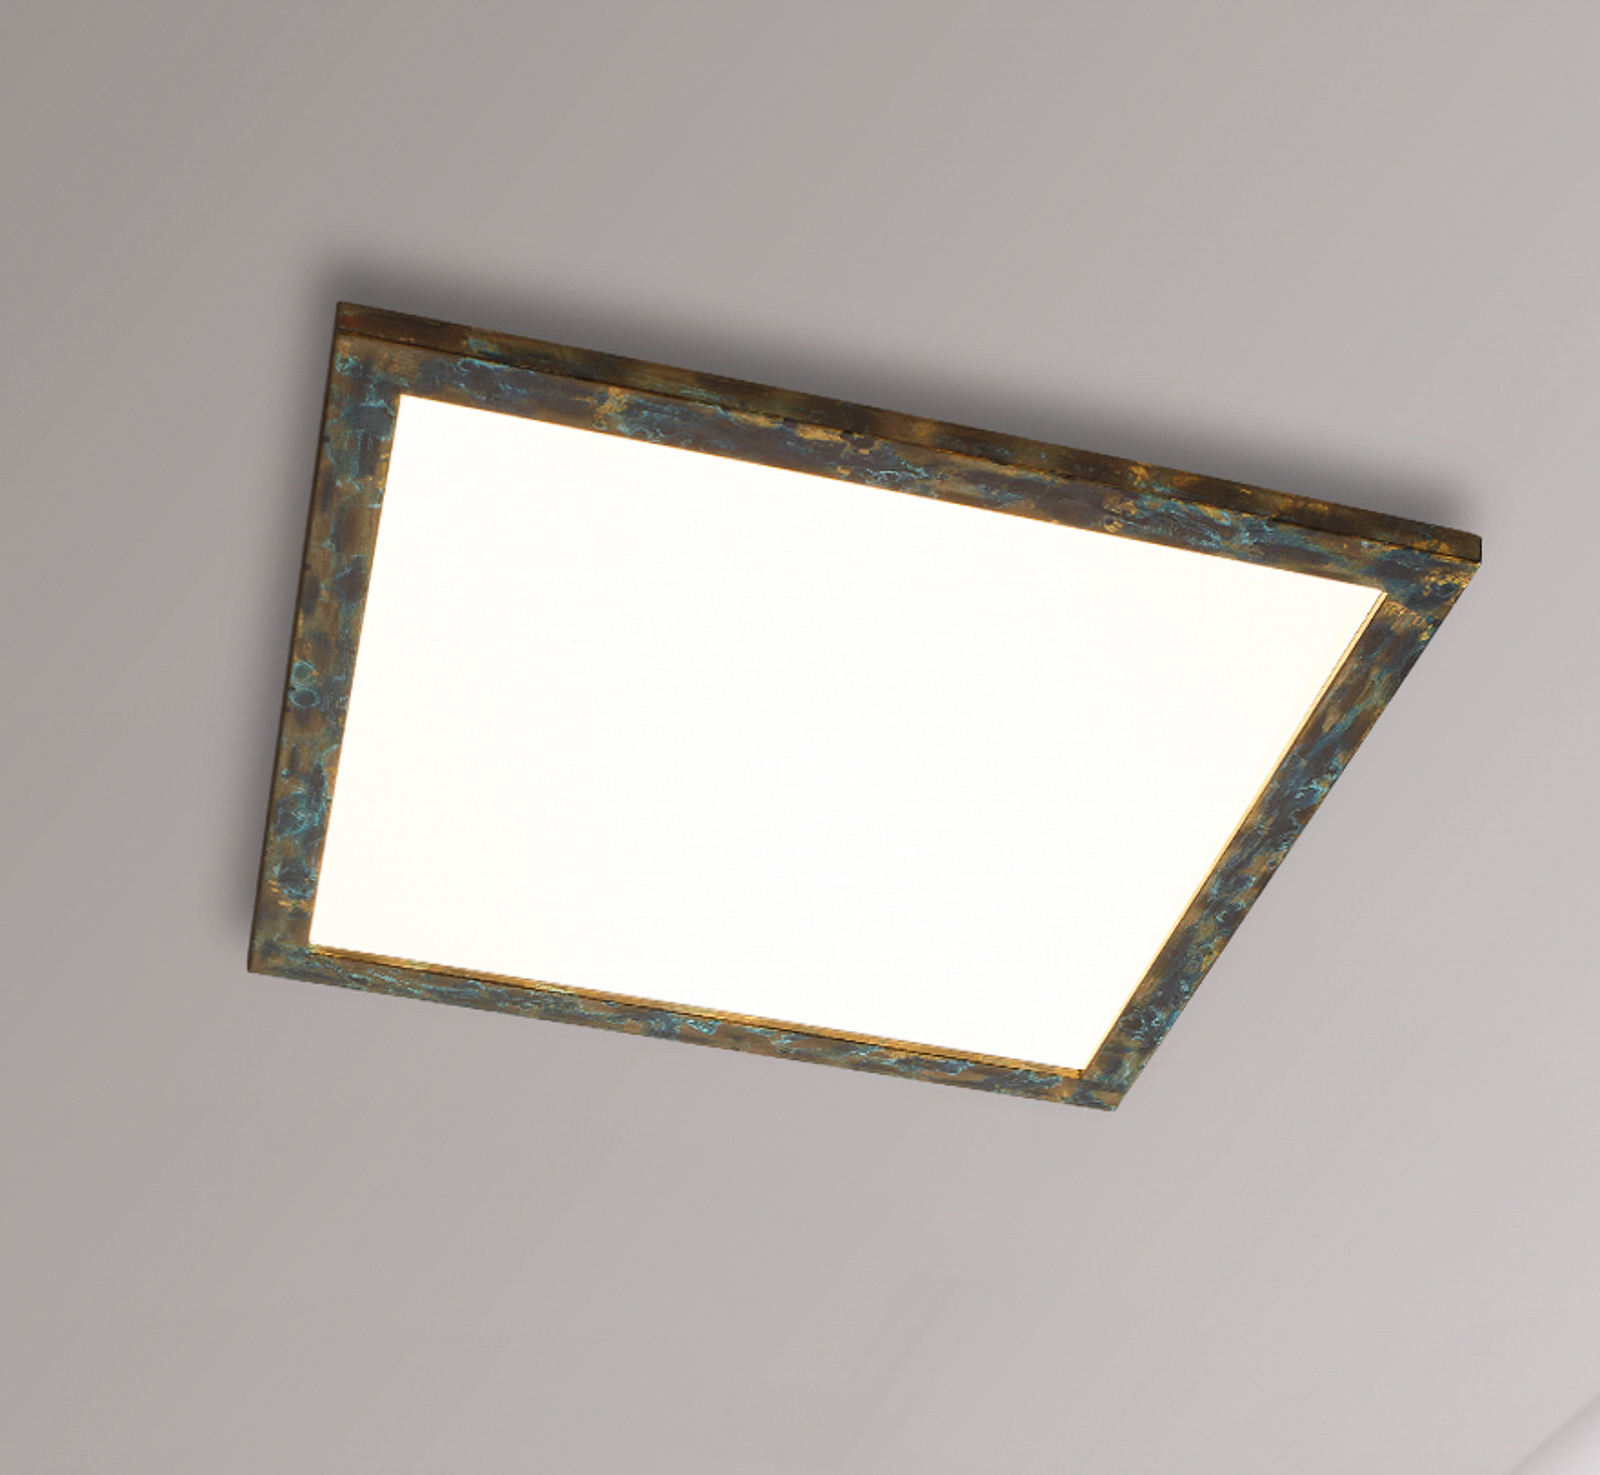 Quitani Aurinor LED paneel, goudkleurig gepatineerd, 68 cm